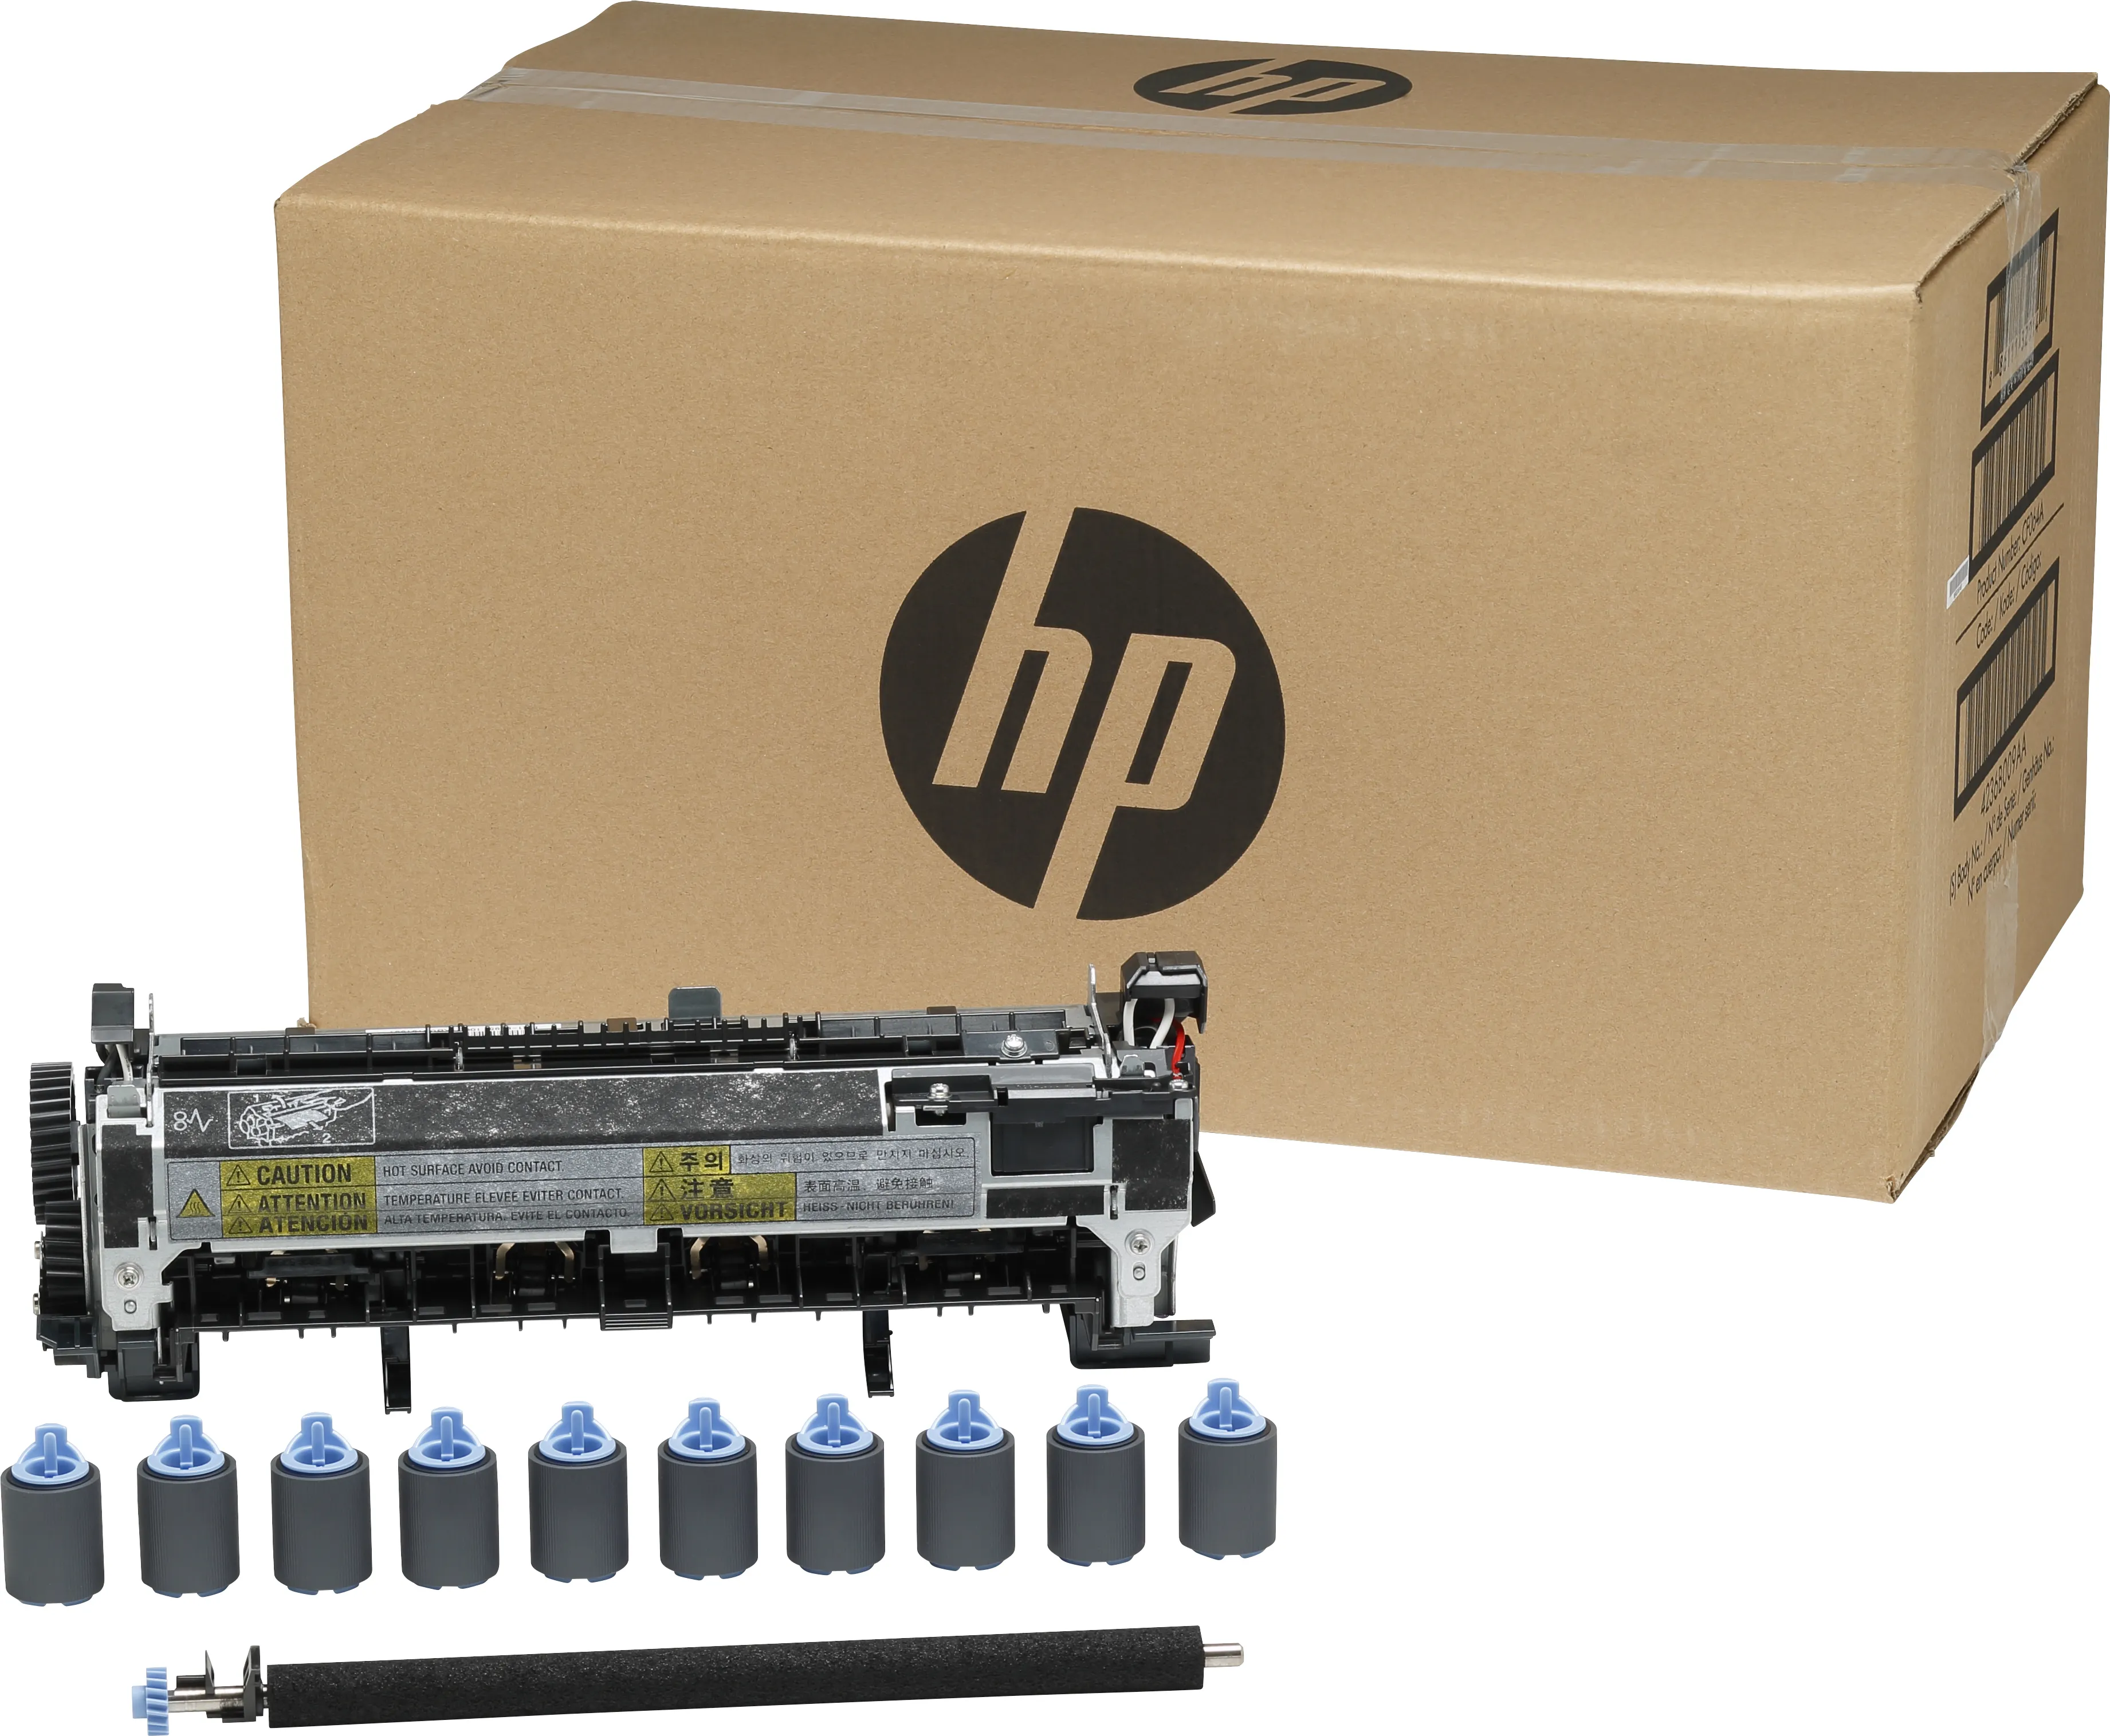 Vente HP original LaserJet Enterprise M601 Enterprise M602 HP au meilleur prix - visuel 4